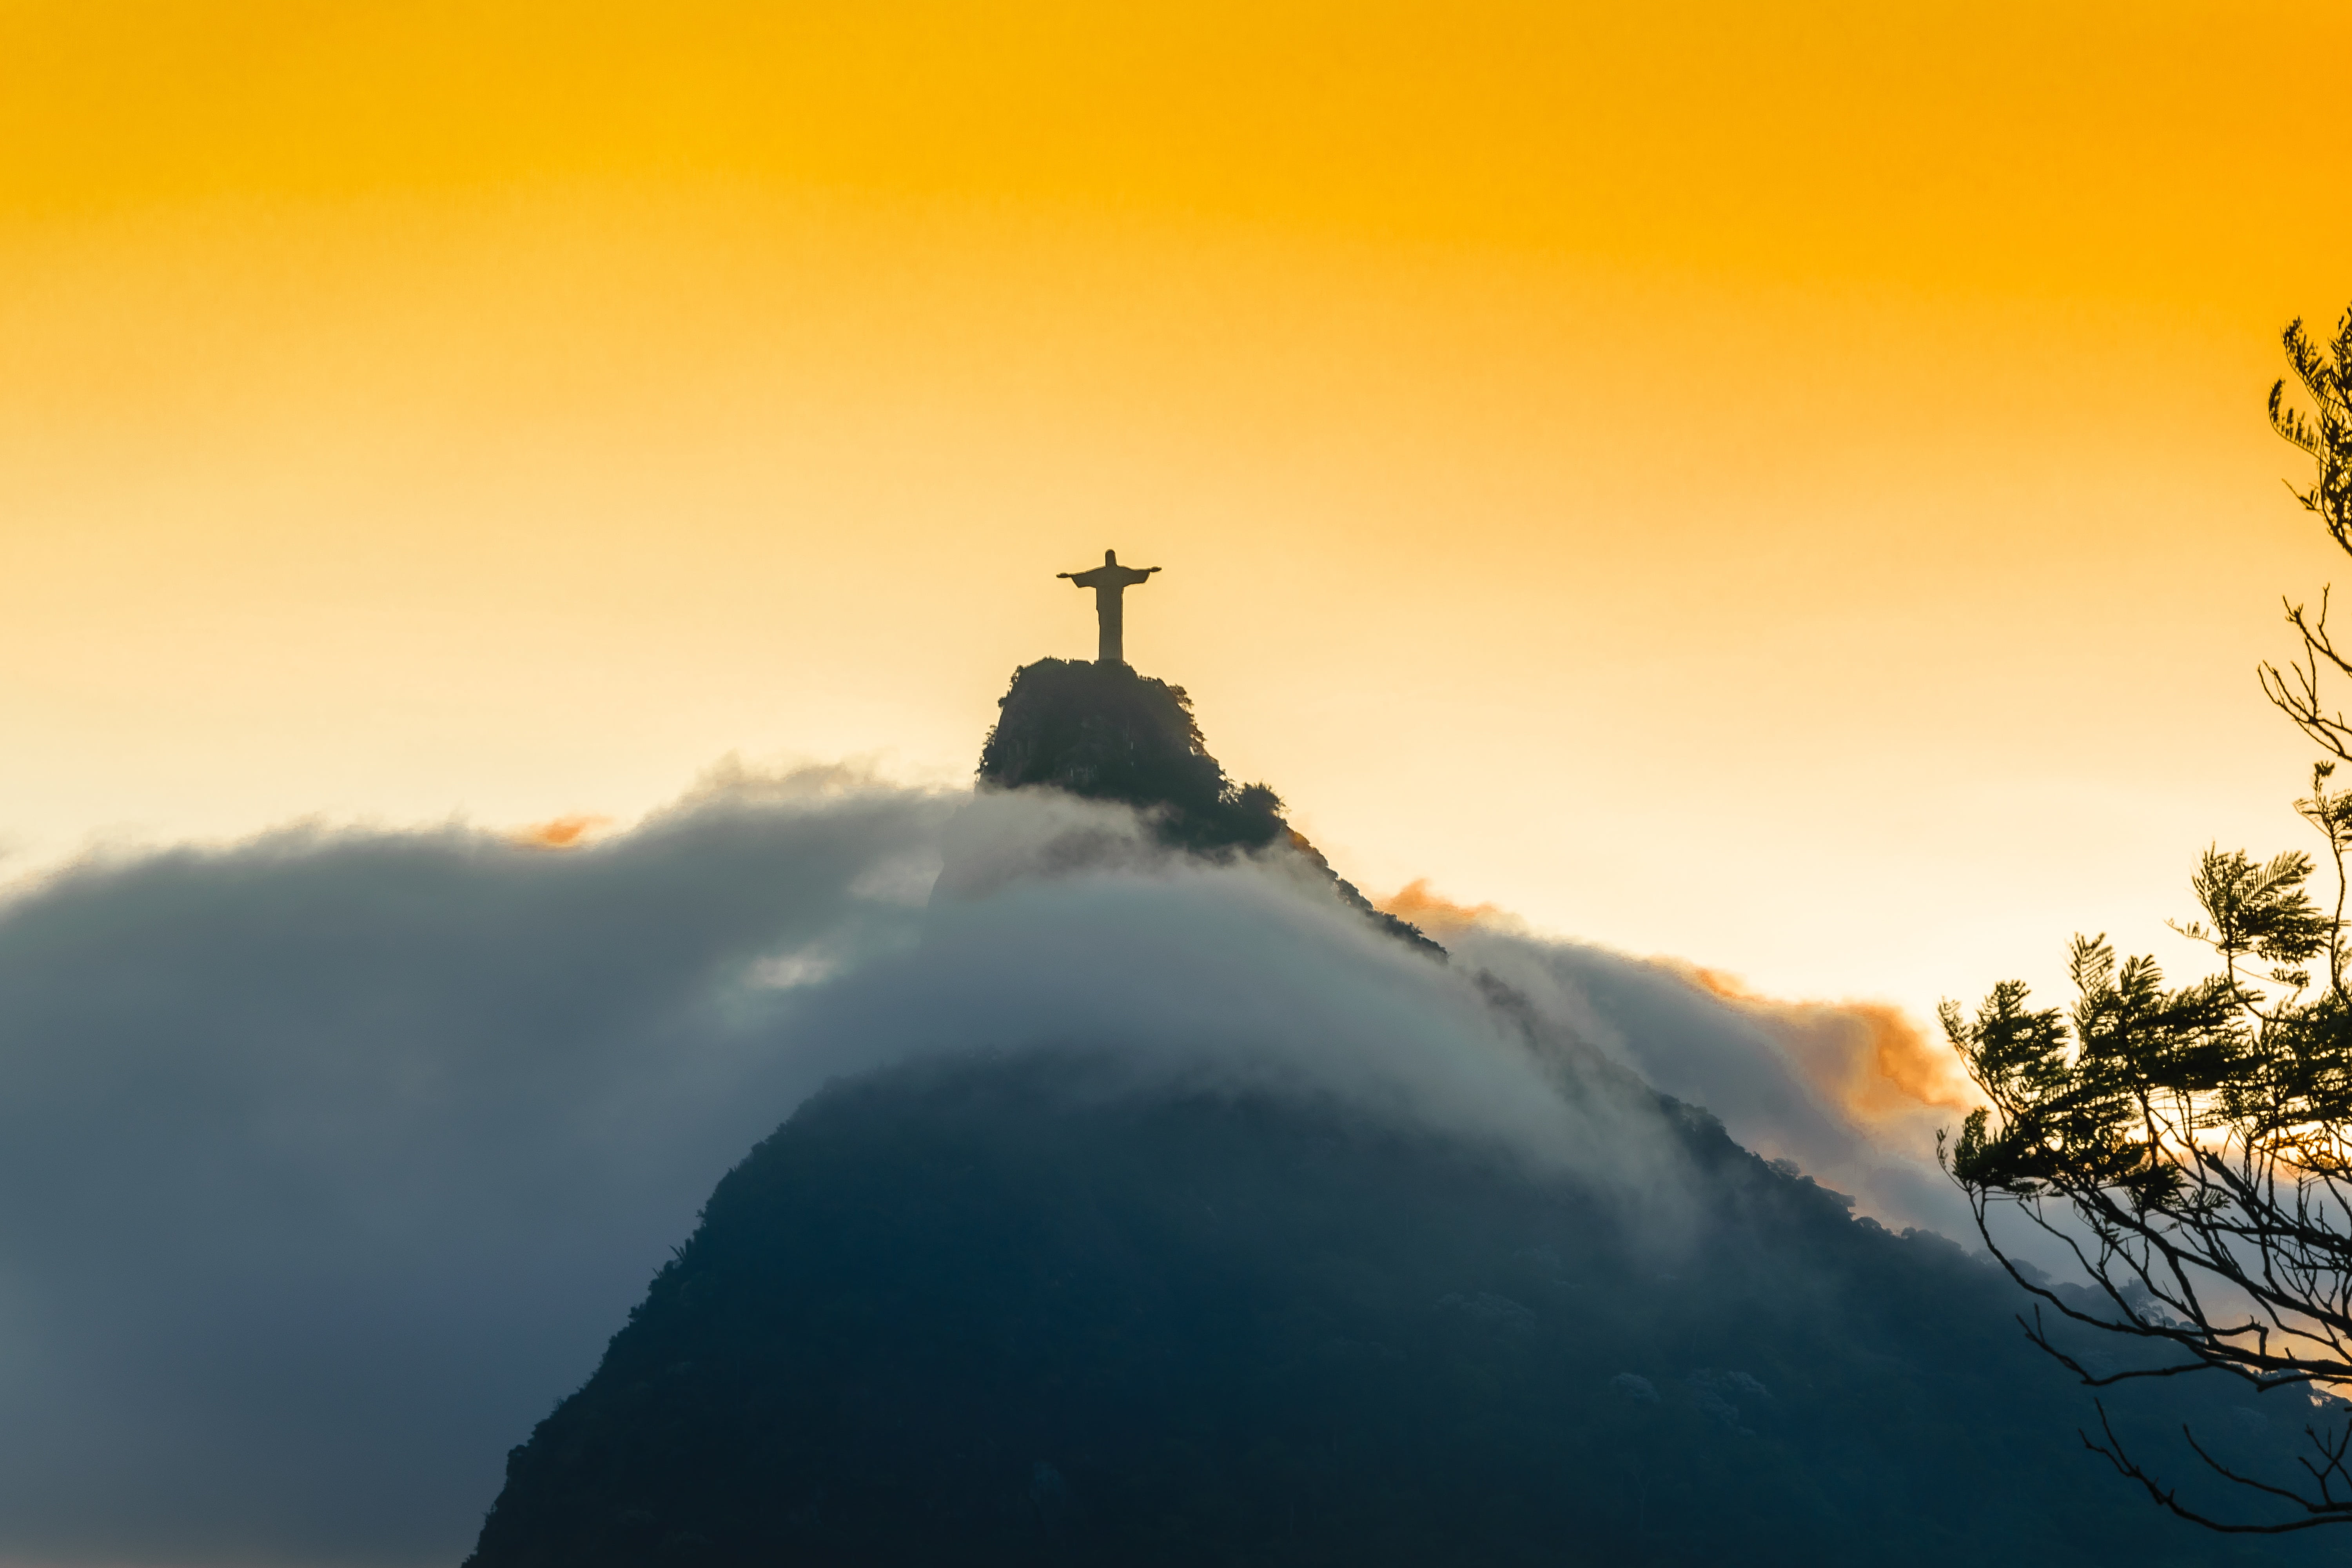 Chris the Redeemer mountain during the sunset, rio, rio de janeiro